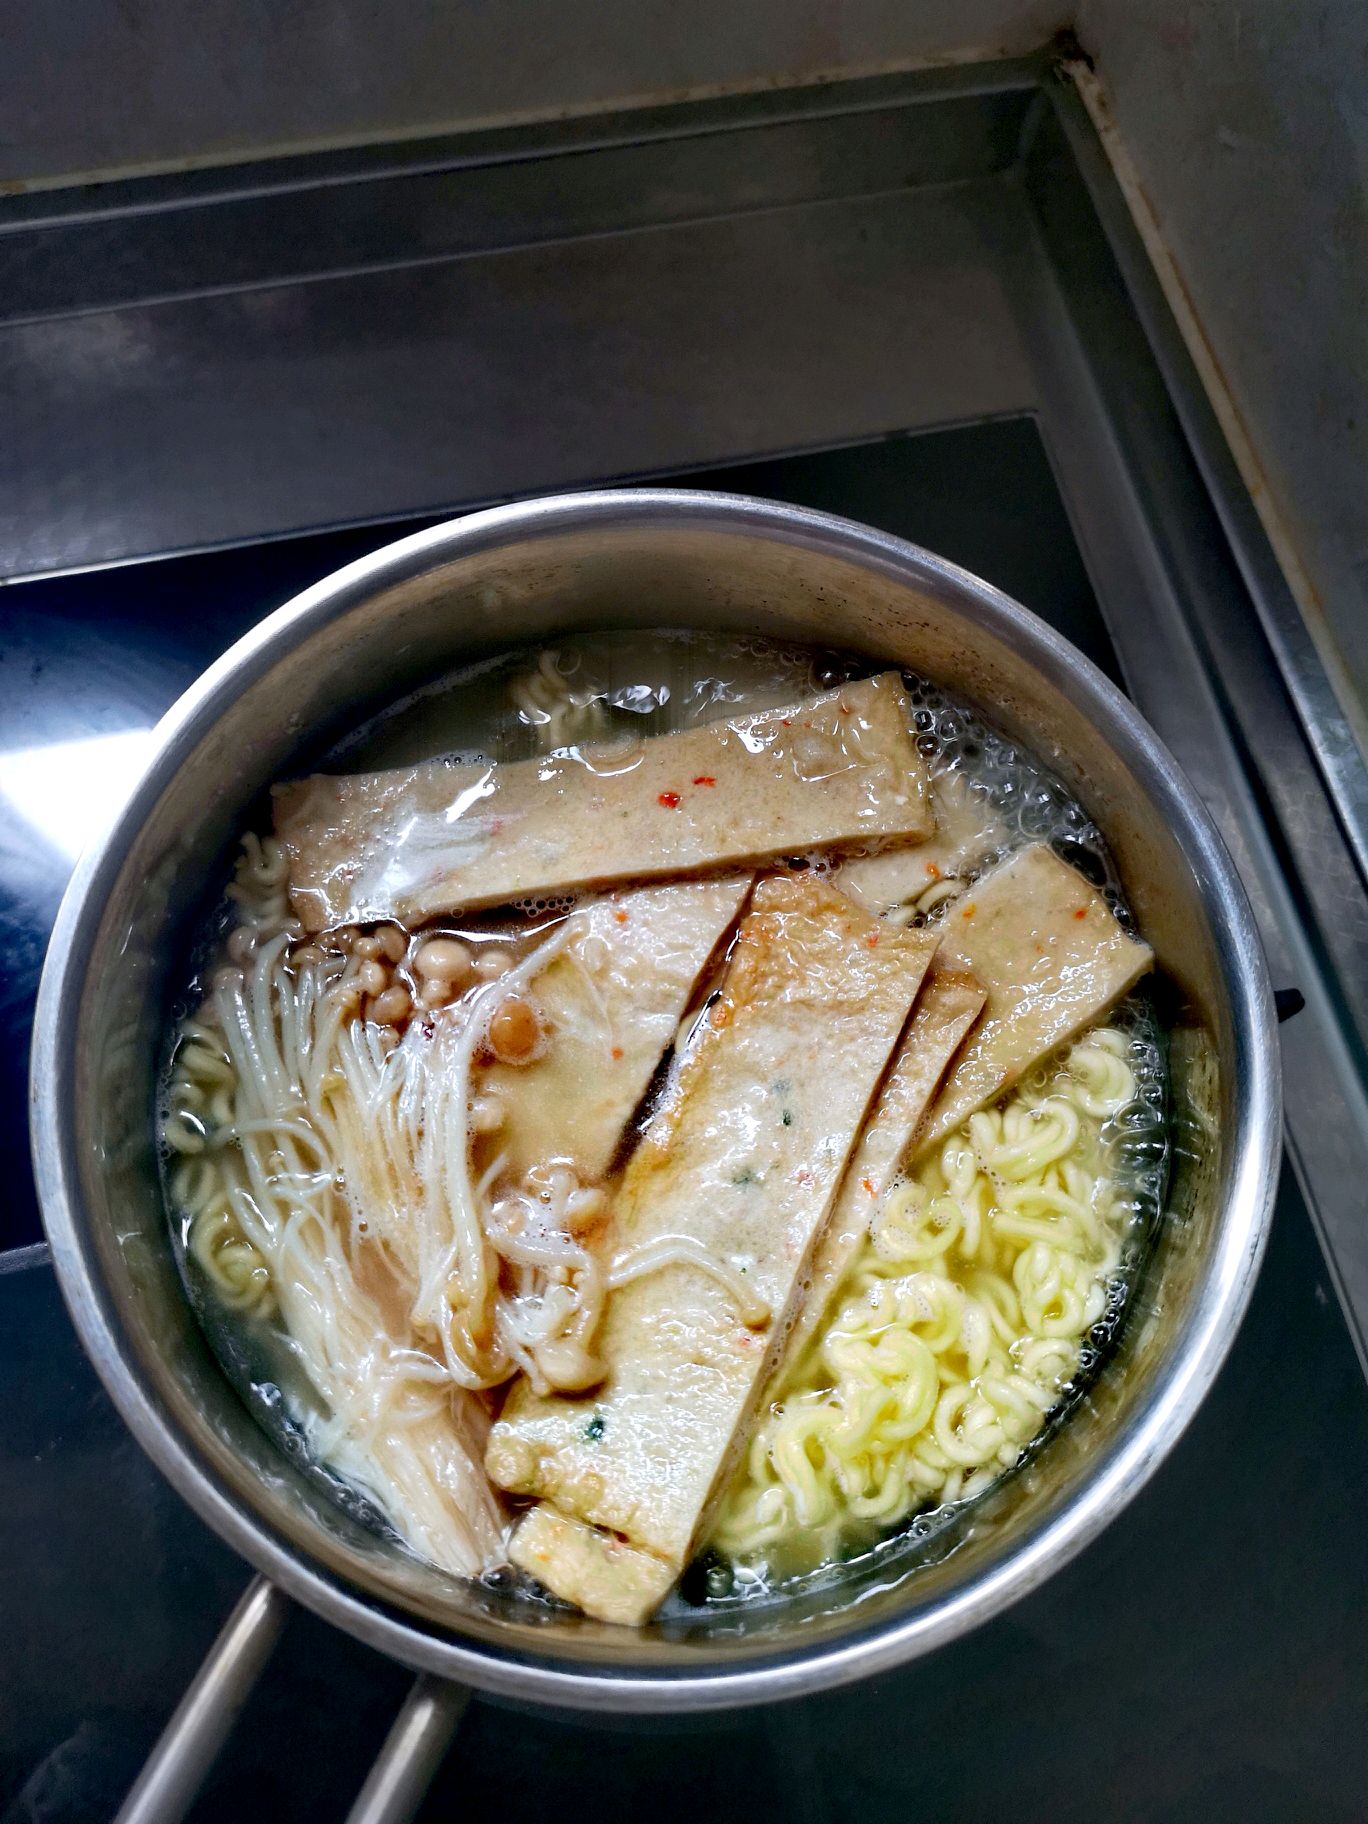 令人惊叹的手工鱼饼制作大师-韩国街头小吃_哔哩哔哩_bilibili